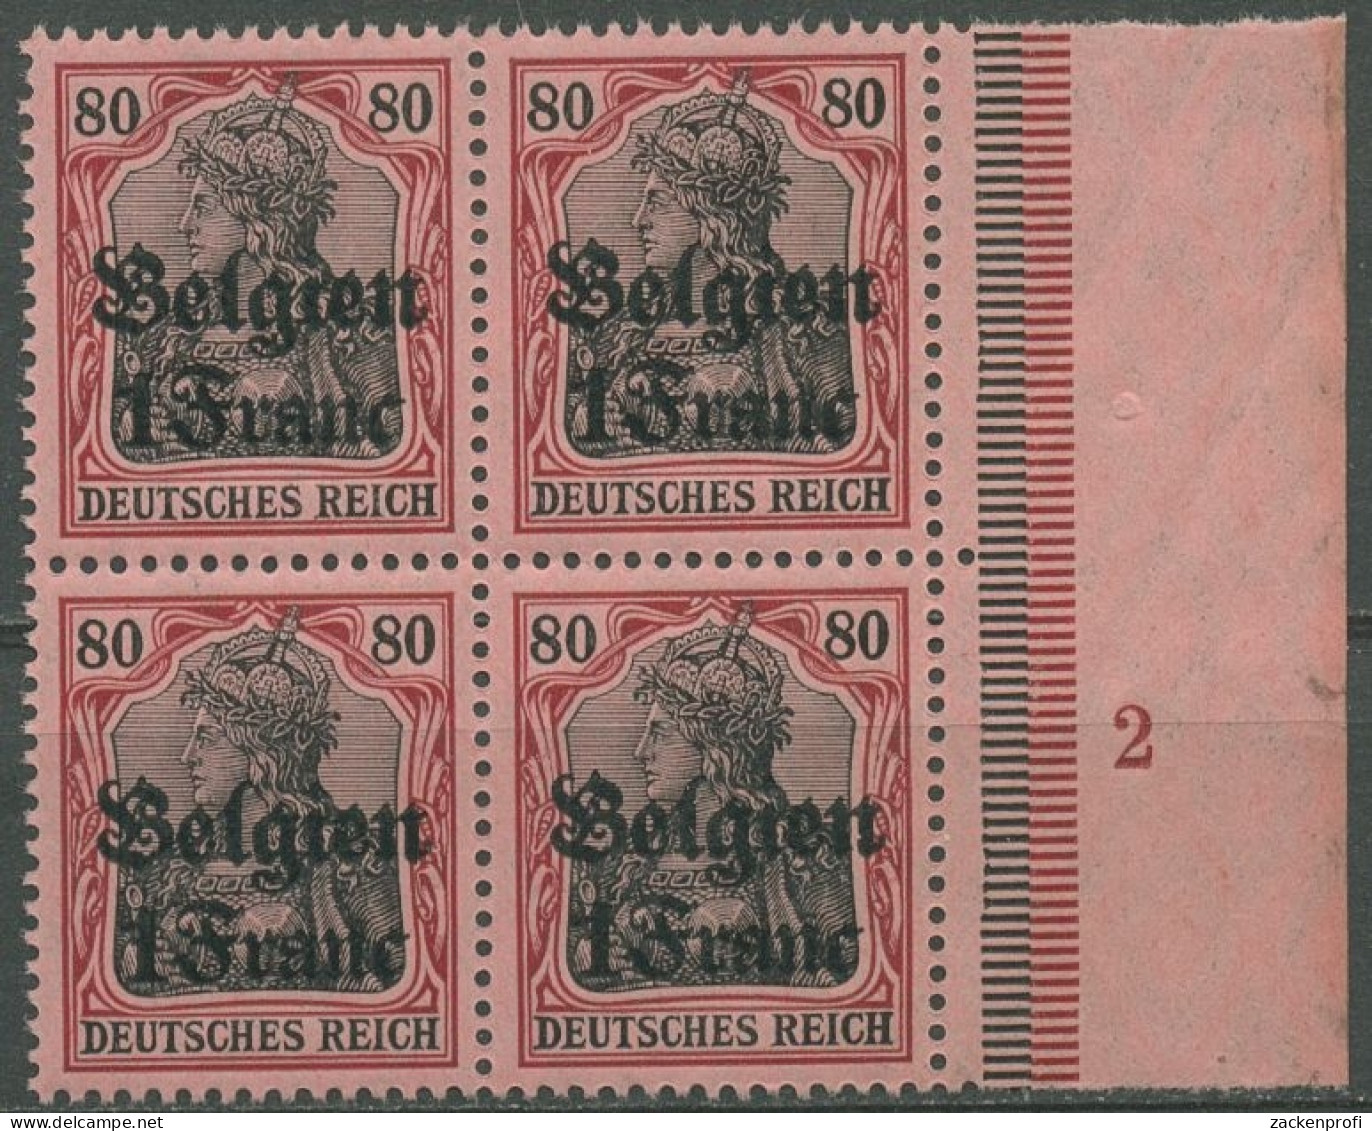 Landespost In Belgien 1914/16 Germania Plattennummer 7 Pl.-Nr. 2 Postfrisch - Occupazione 1914 – 18